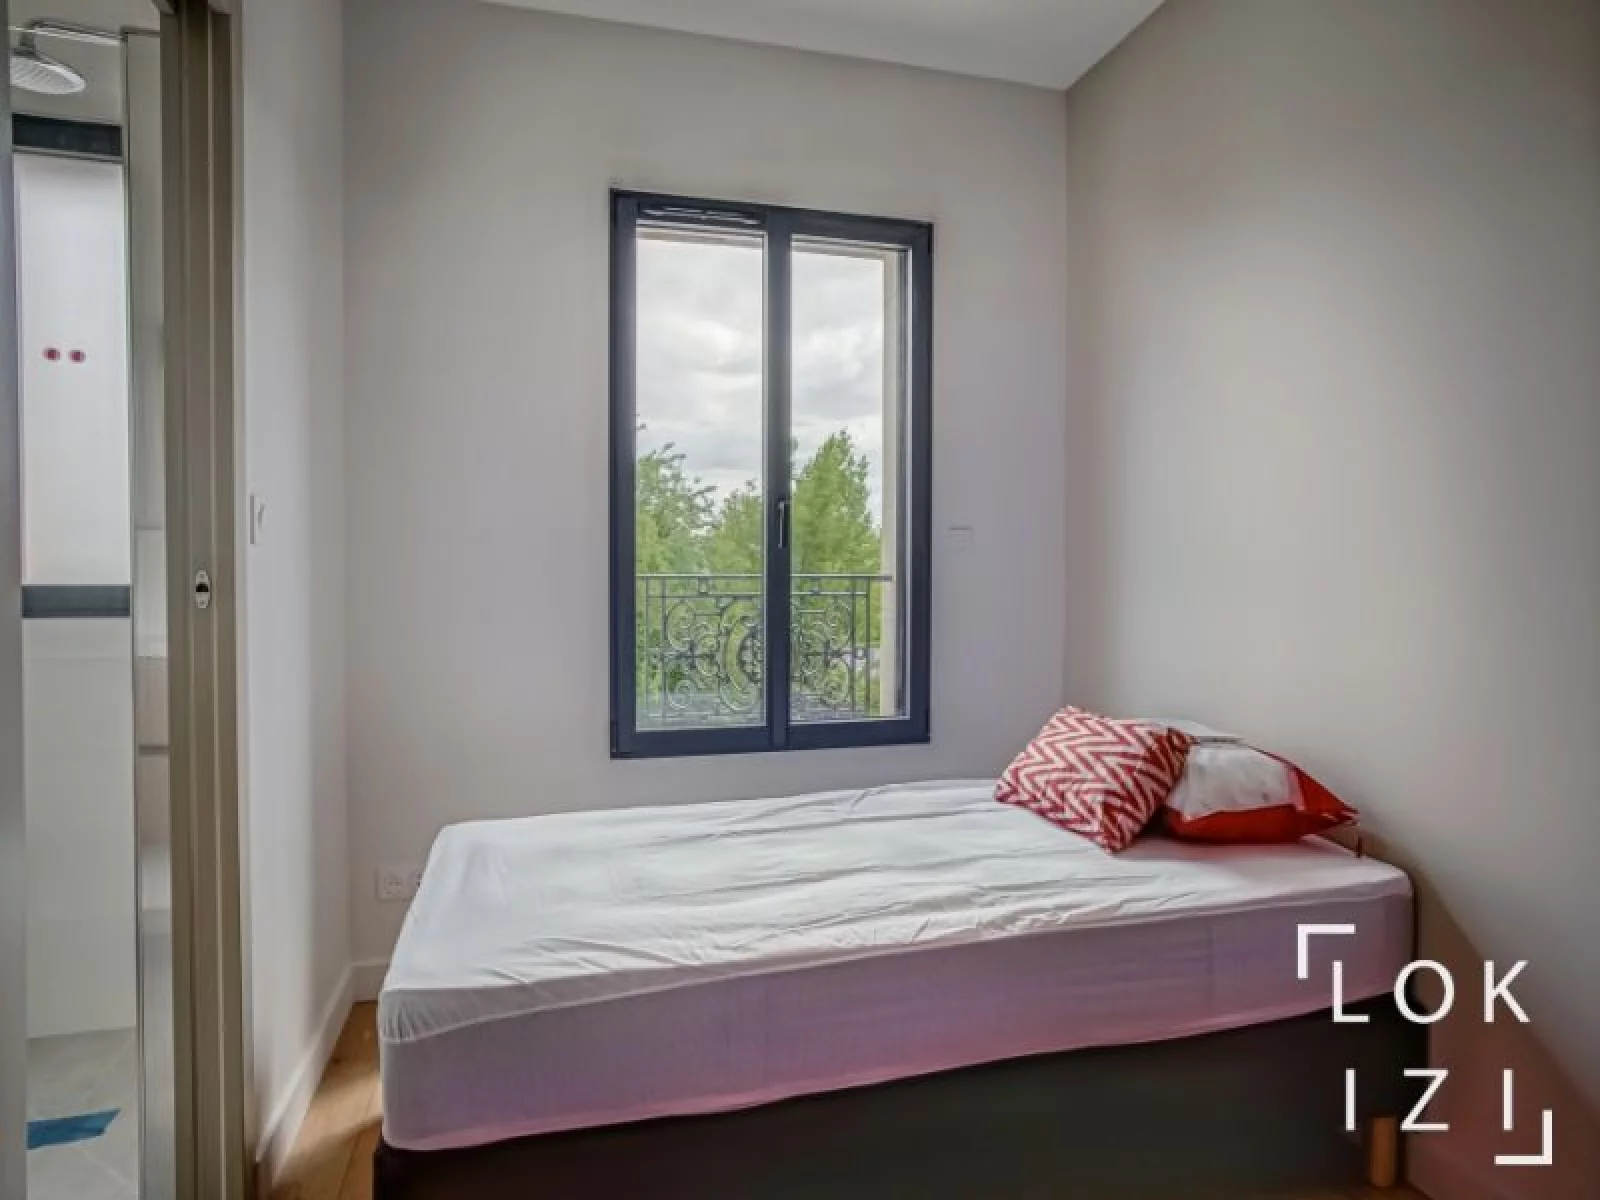 Location maison meuble 90m + jardin 85m + garage (Bordeaux - Mrignac)